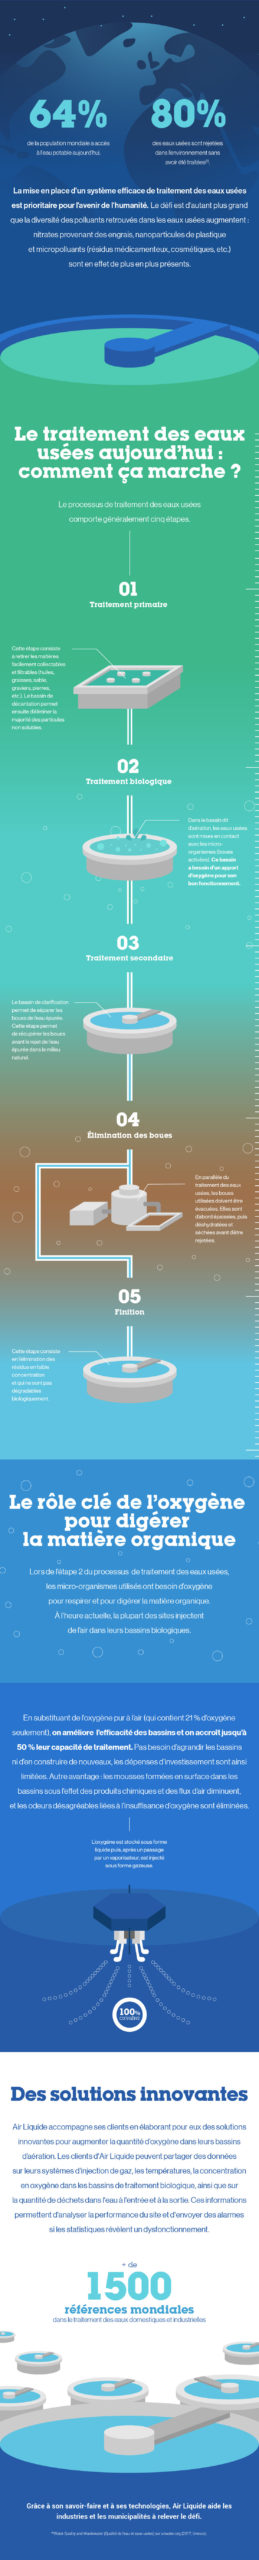 Infographie traitement des eaux